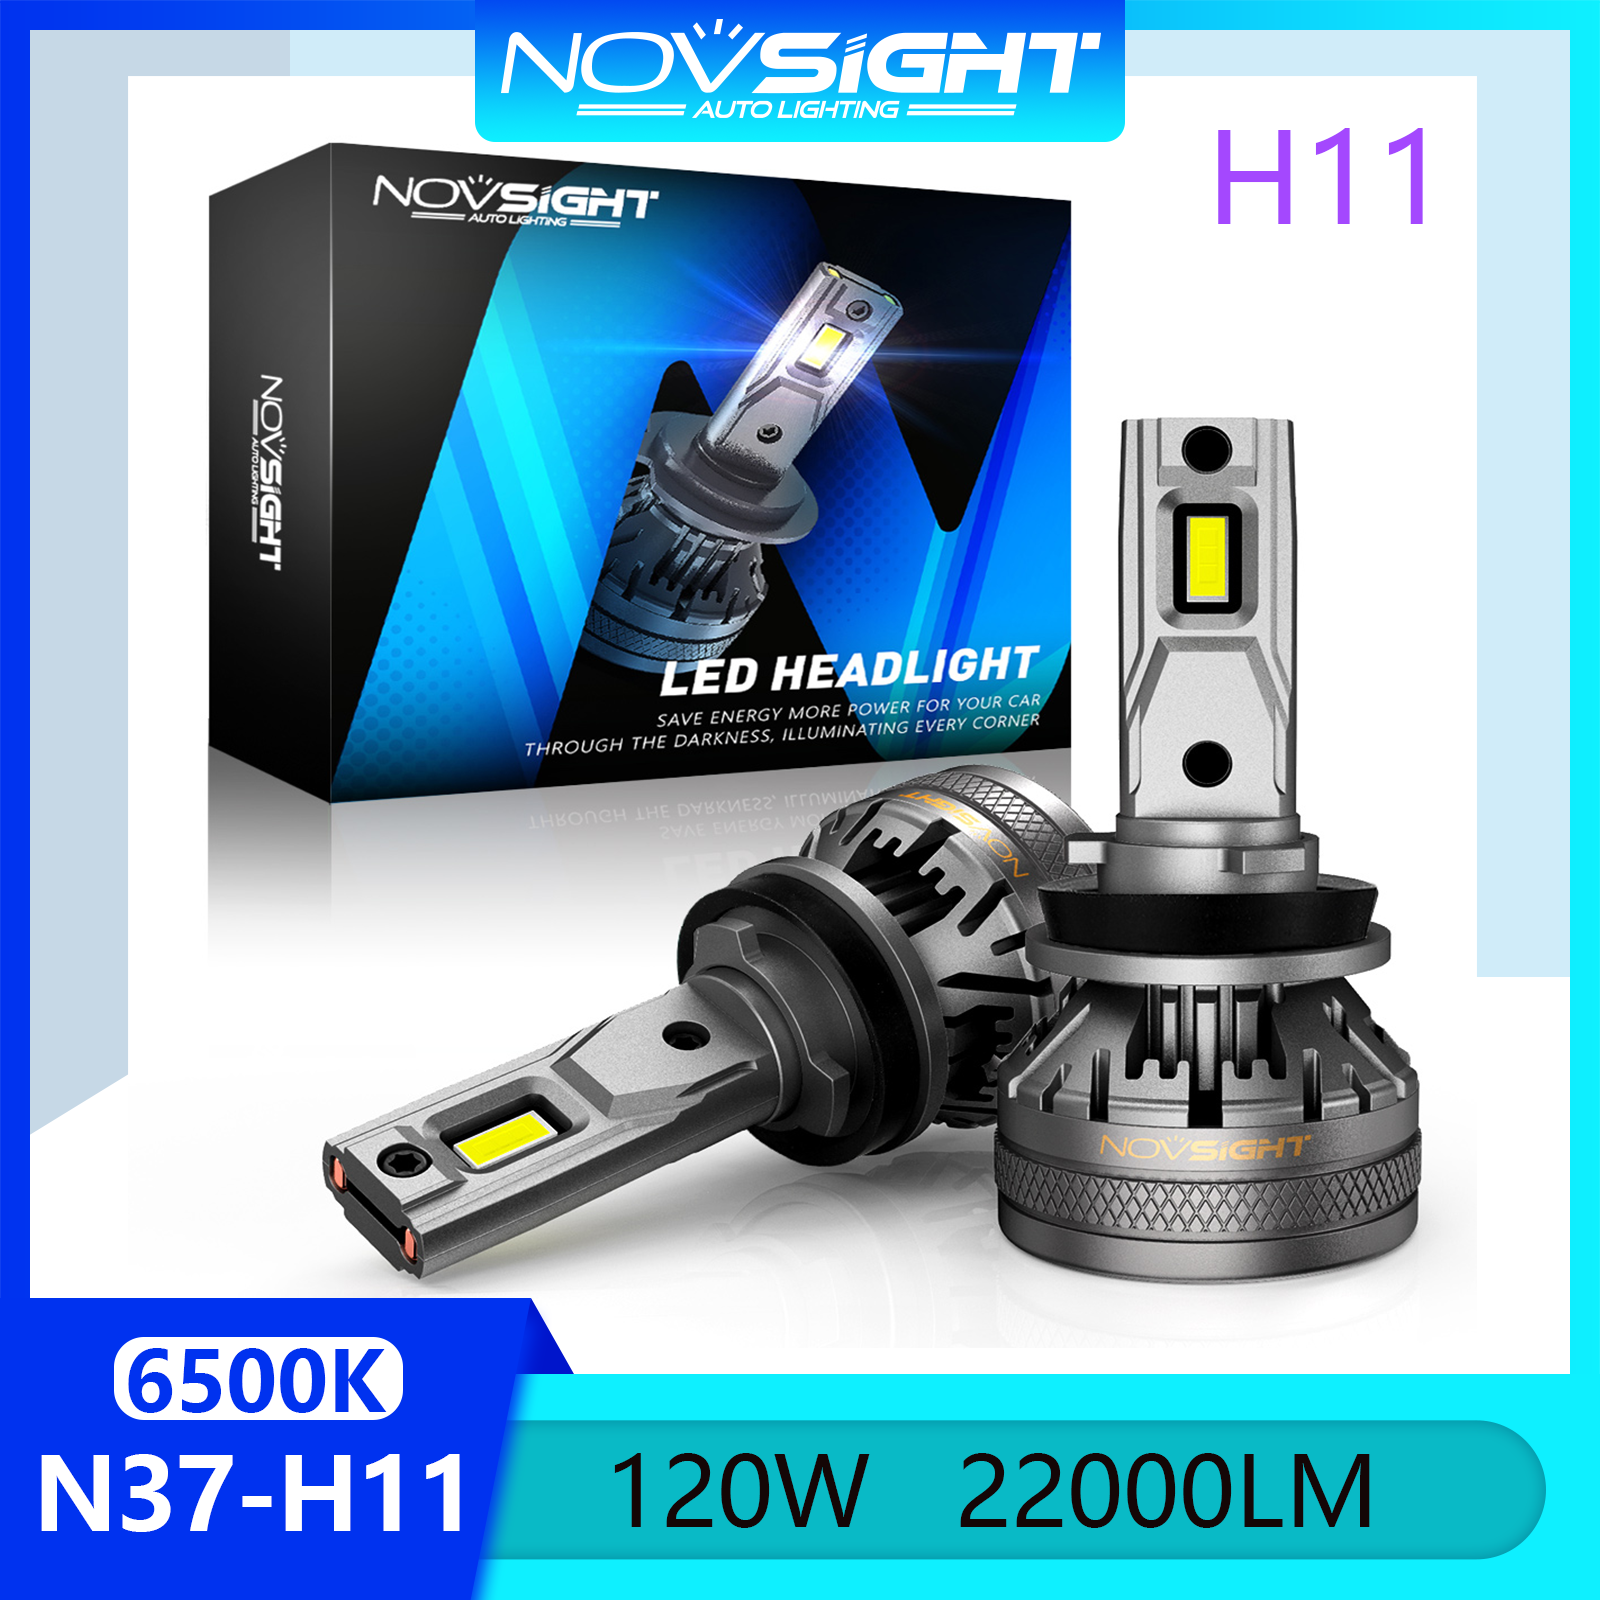 Novsight N37 6500K Đèn pha LED siêu sáng H11 Đèn pha LED Bộ đèn pha Đèn sương mù Chùm sáng cao / thấp 120W 22000LM Cắm và chạy Còn hàng 1 cặp 2 miếng Bảo hành 2 năm Miễn phí vận chuyển